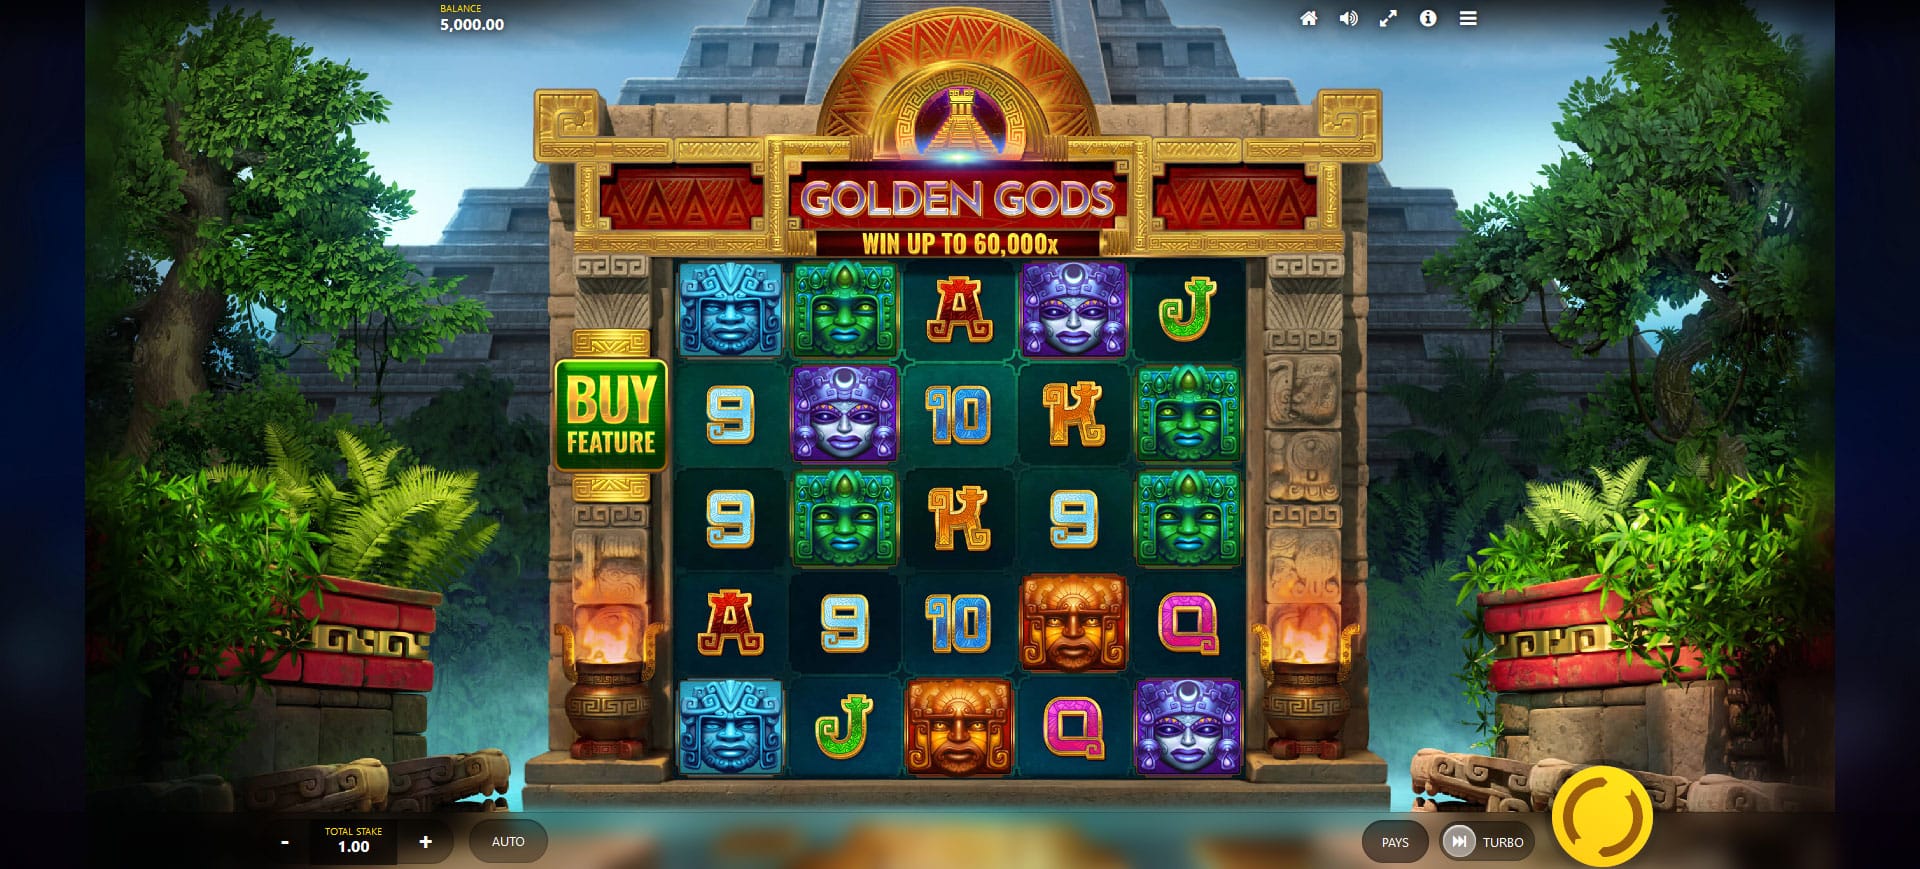 schermata della slot machine golden gods